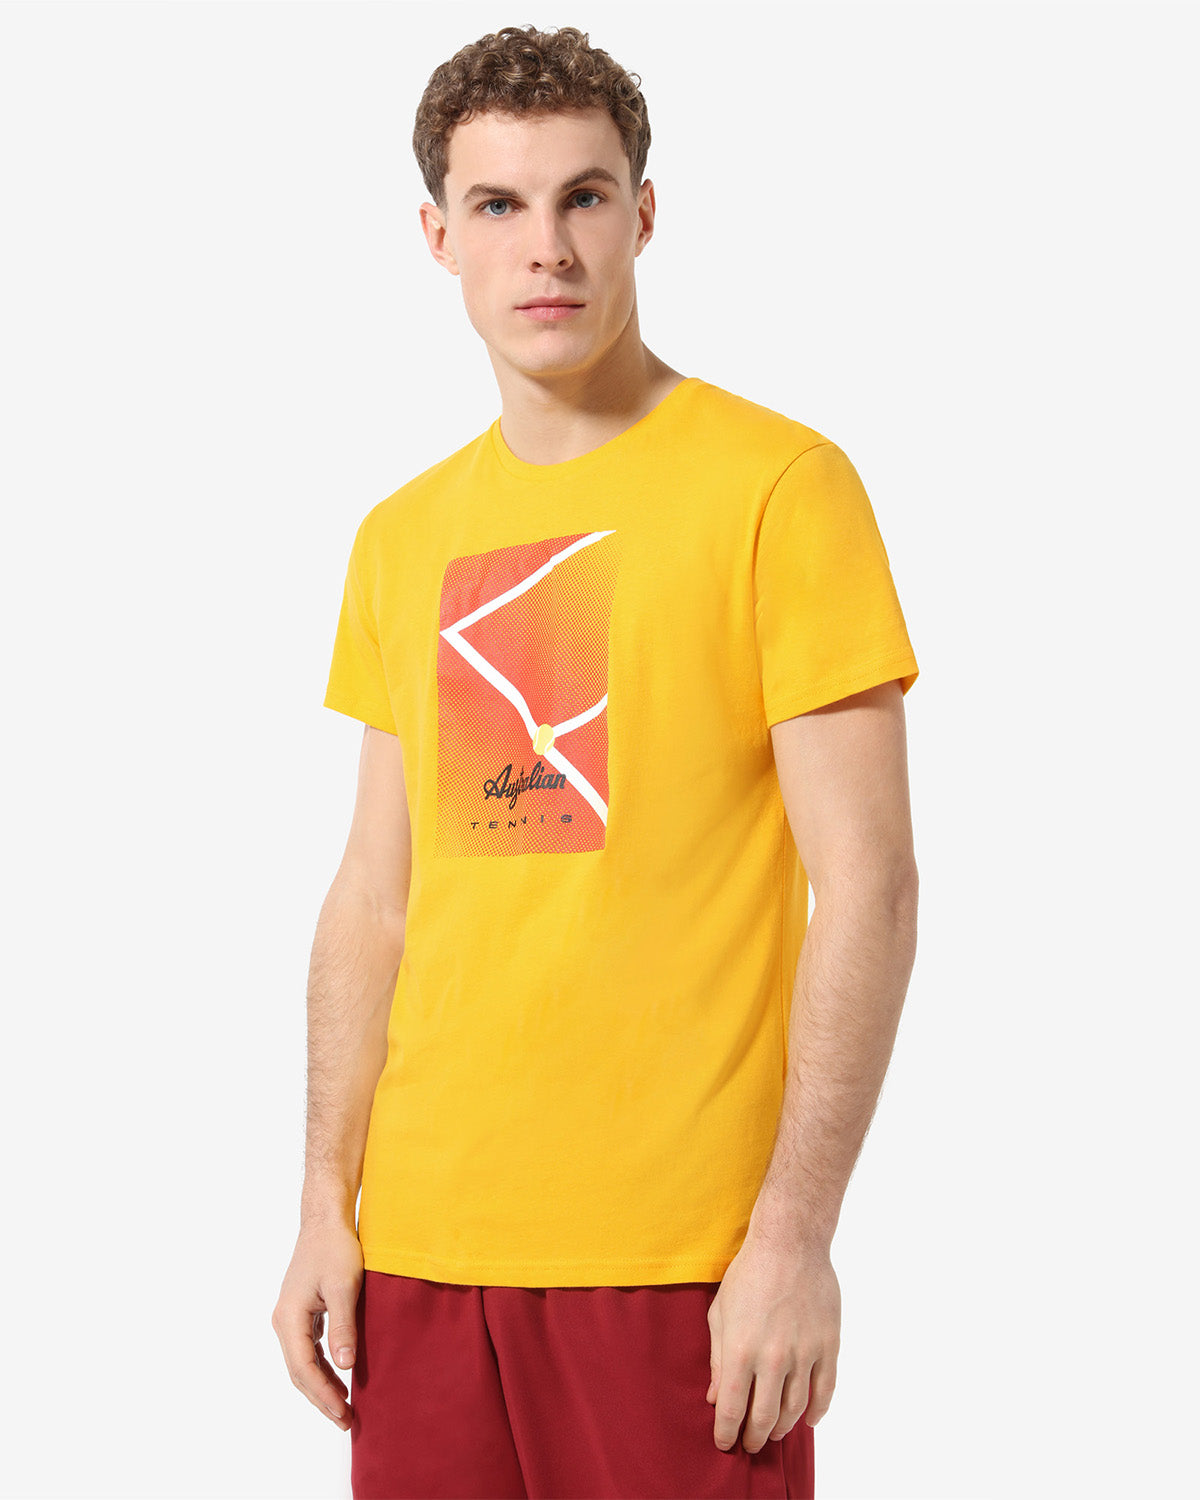 Court T-shirt: Australian Tennis 